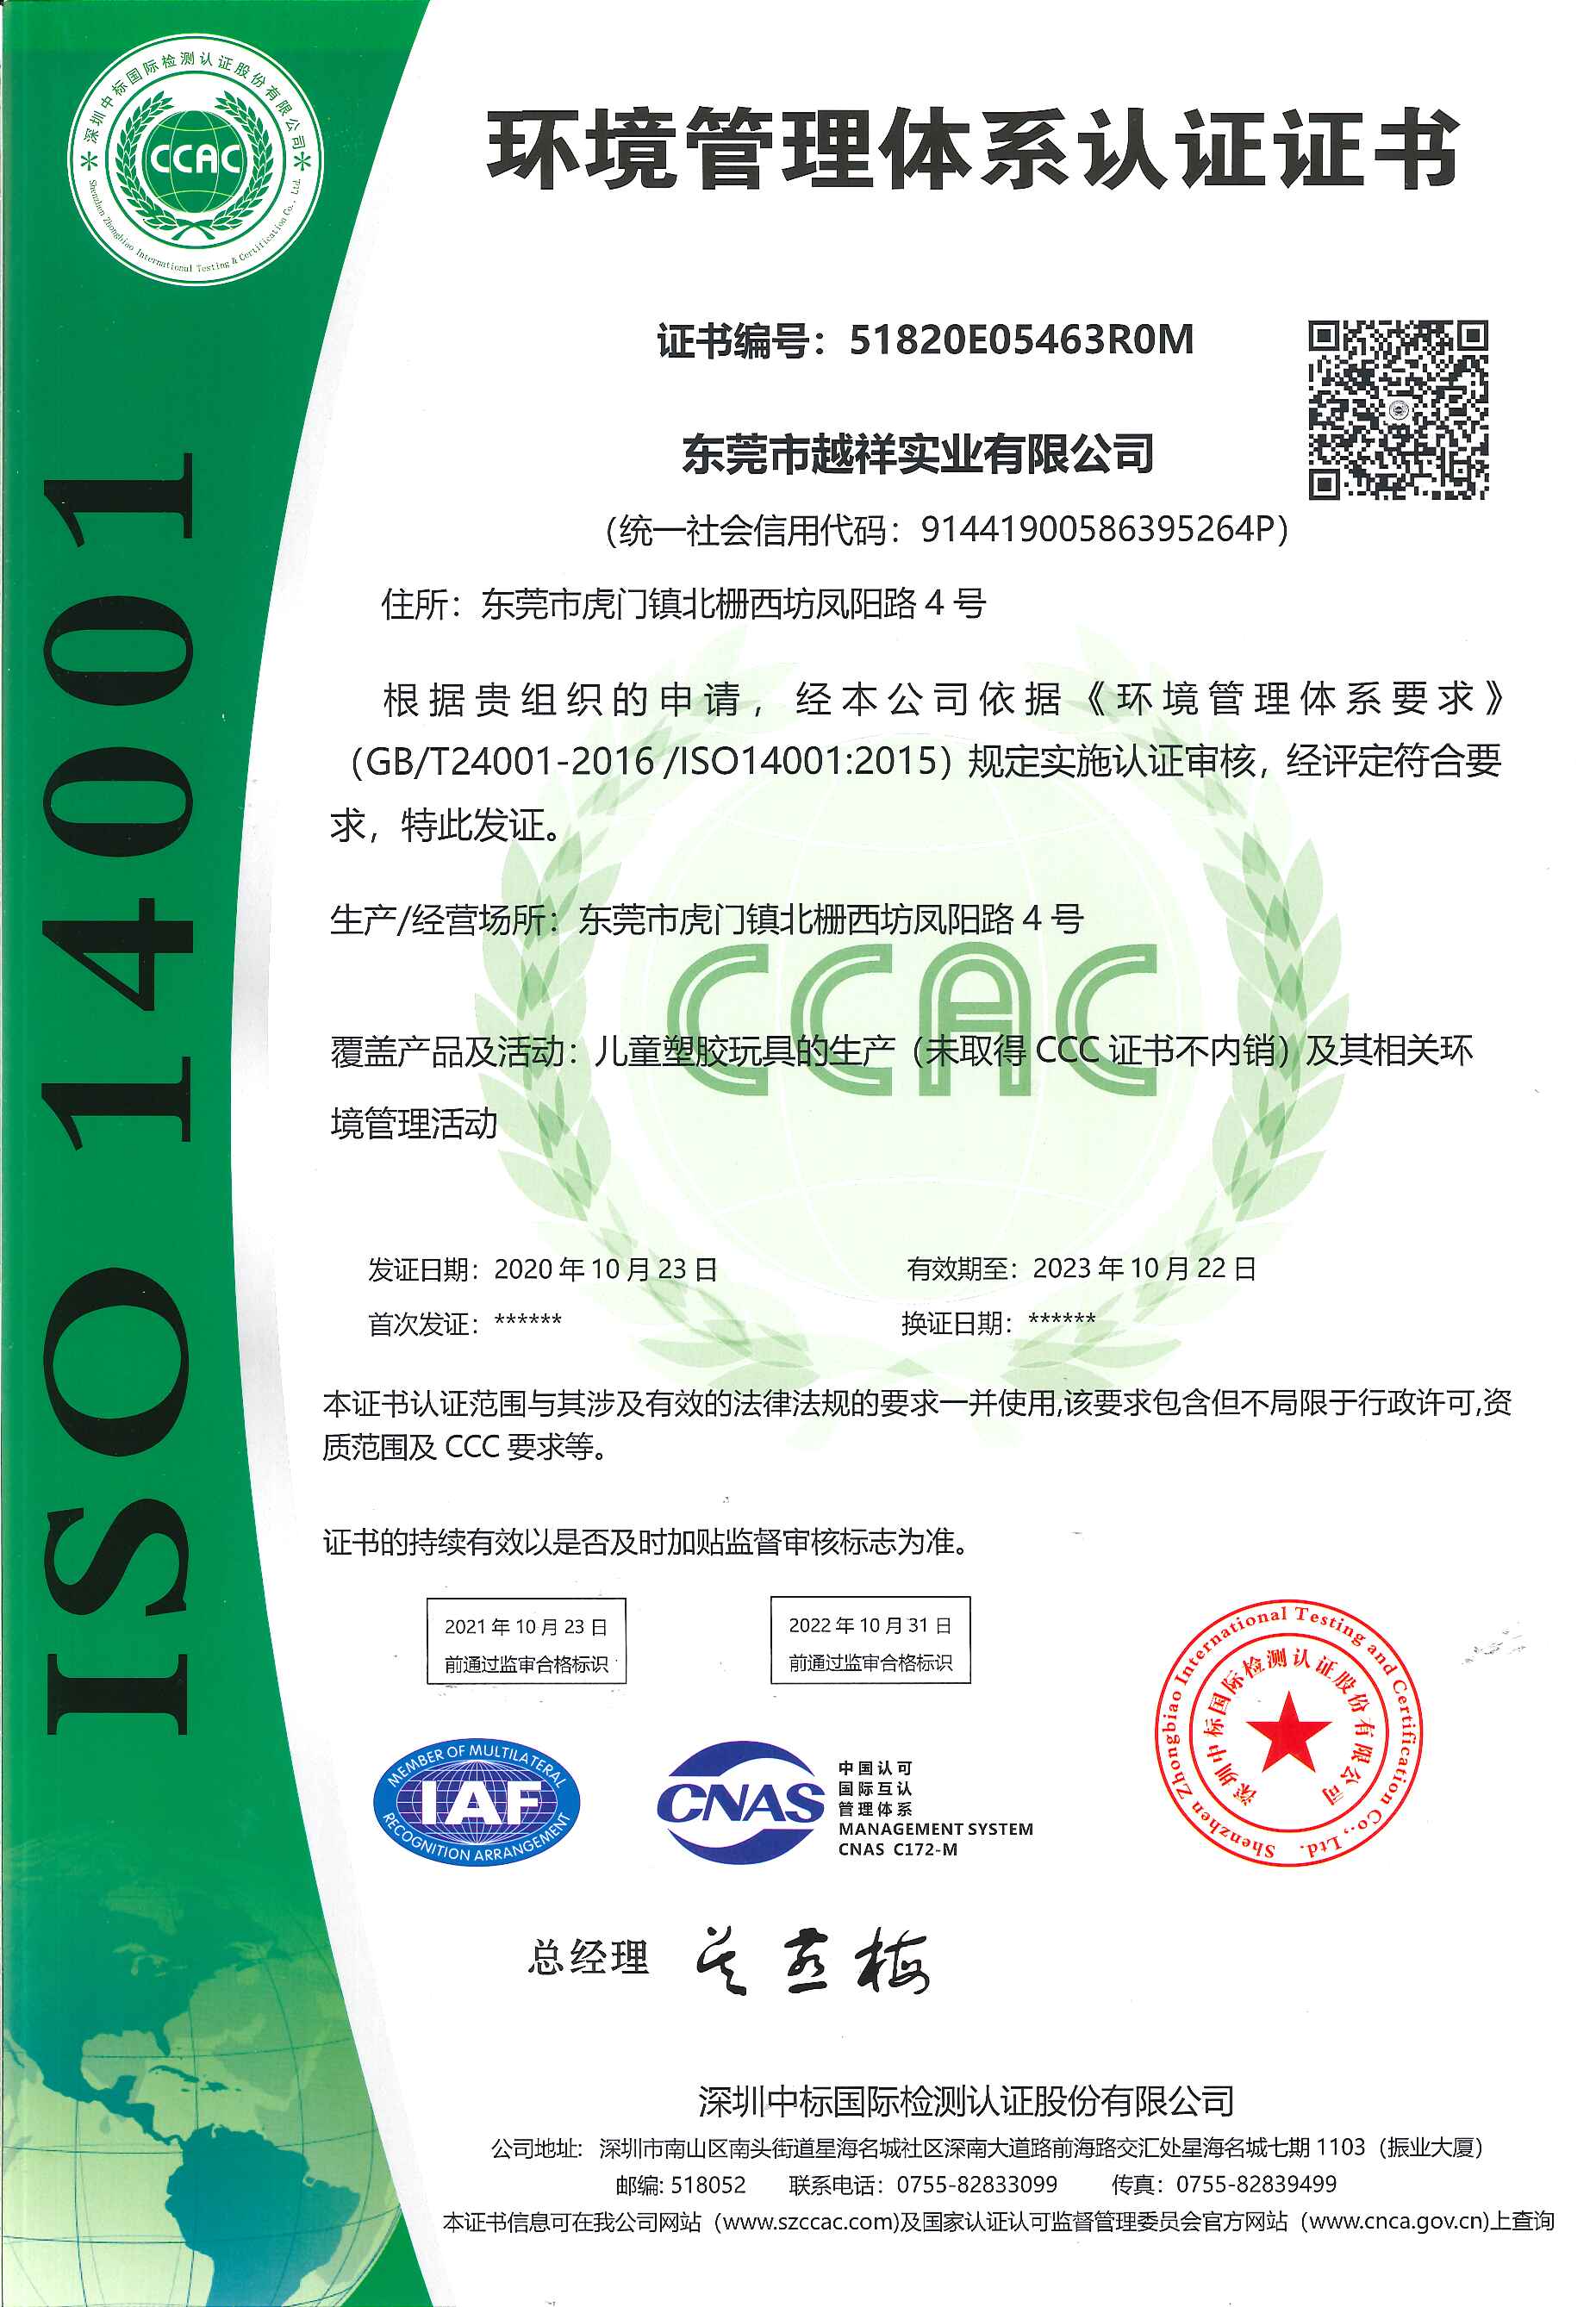 恭祝东莞市越祥实业有限公司一次性顺利通过ISO14001认证